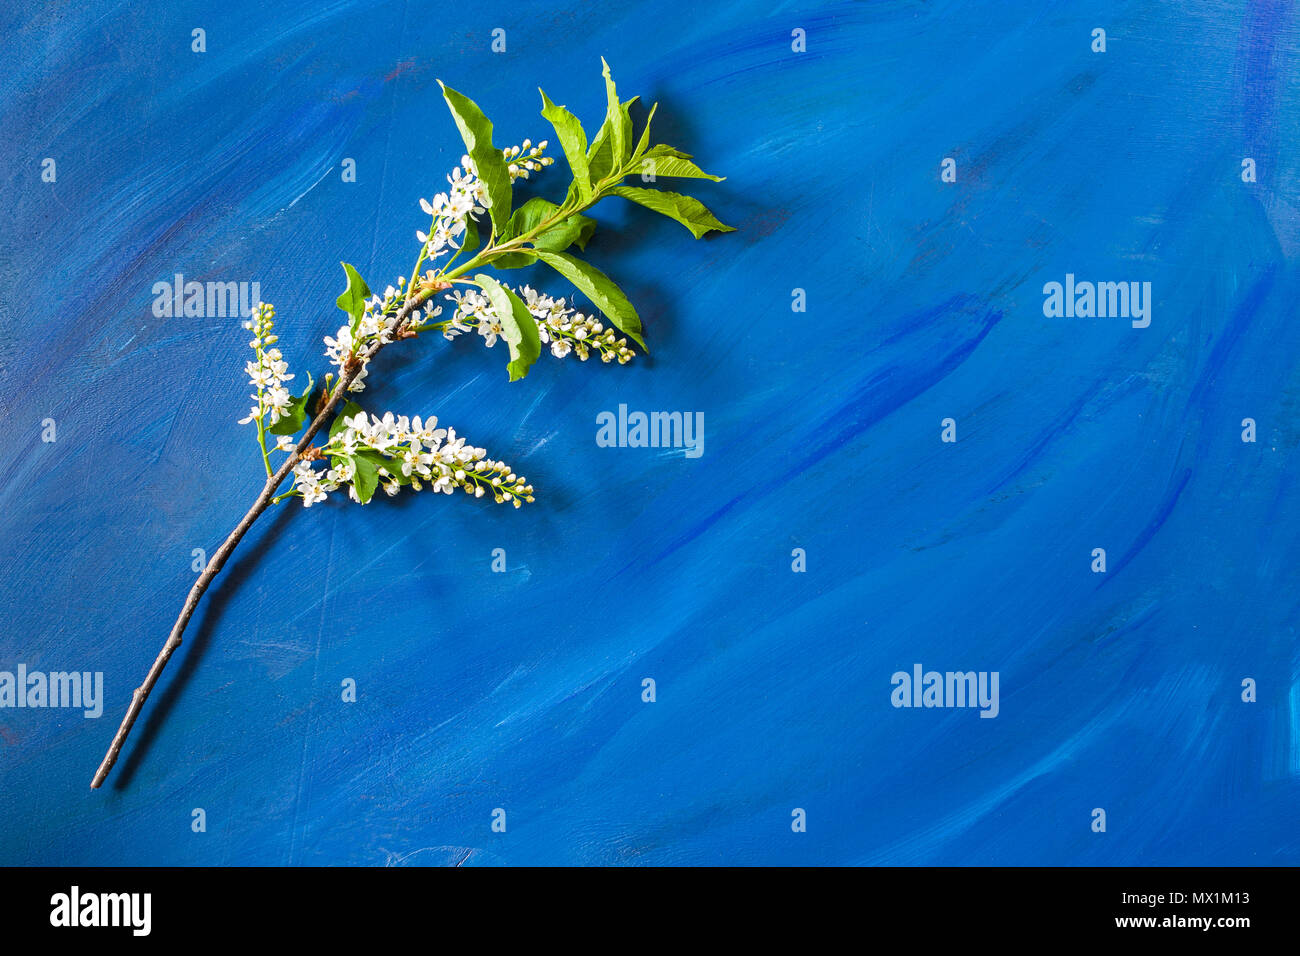 Blooming succursale de bird cherry est couché sur fond bleu à la mode avec l'exemplaire de l'espace. Banque D'Images